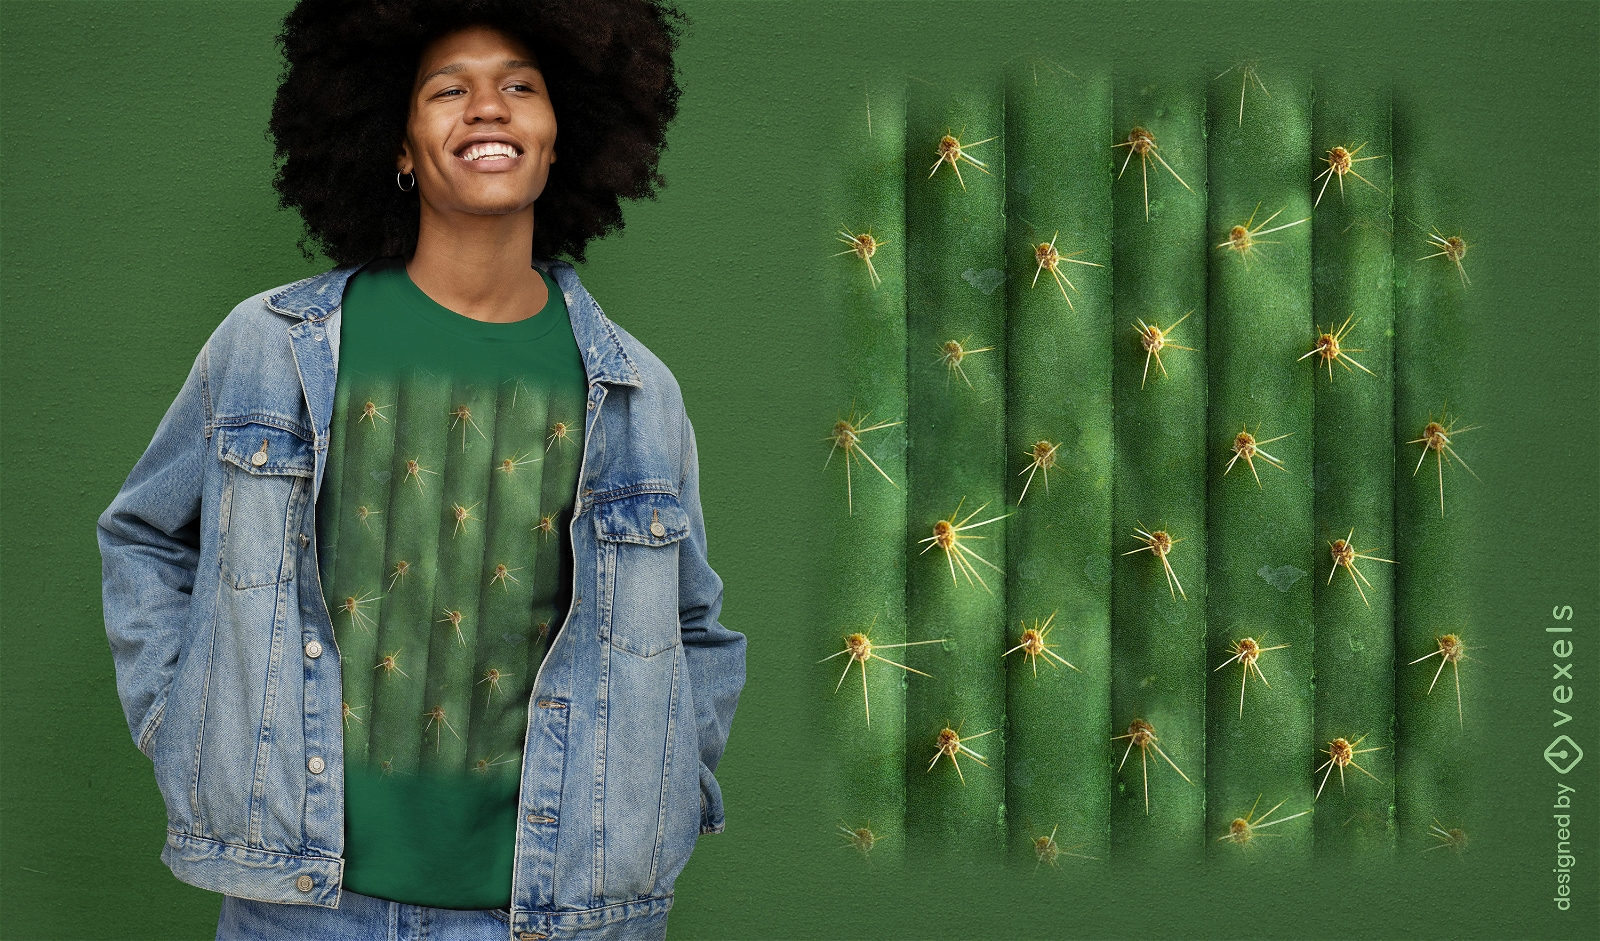 Diseño de camiseta de cactus realista.